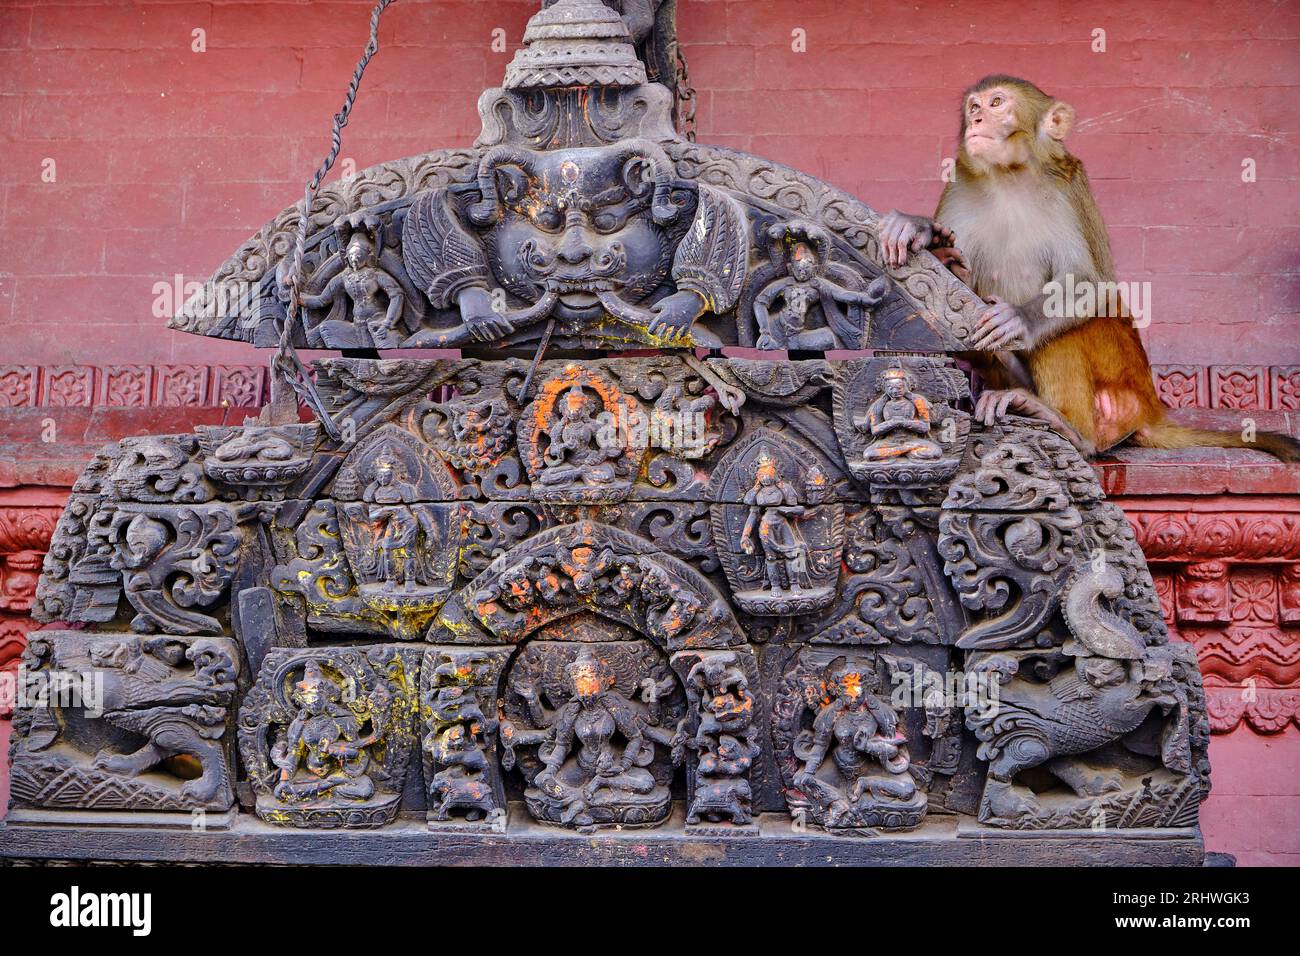 Nepal, valle di Kathmandu, stupa buddista Swayambunath, chiamato anche tempio delle scimmie perché popolato da molti macachi rhesus Foto Stock